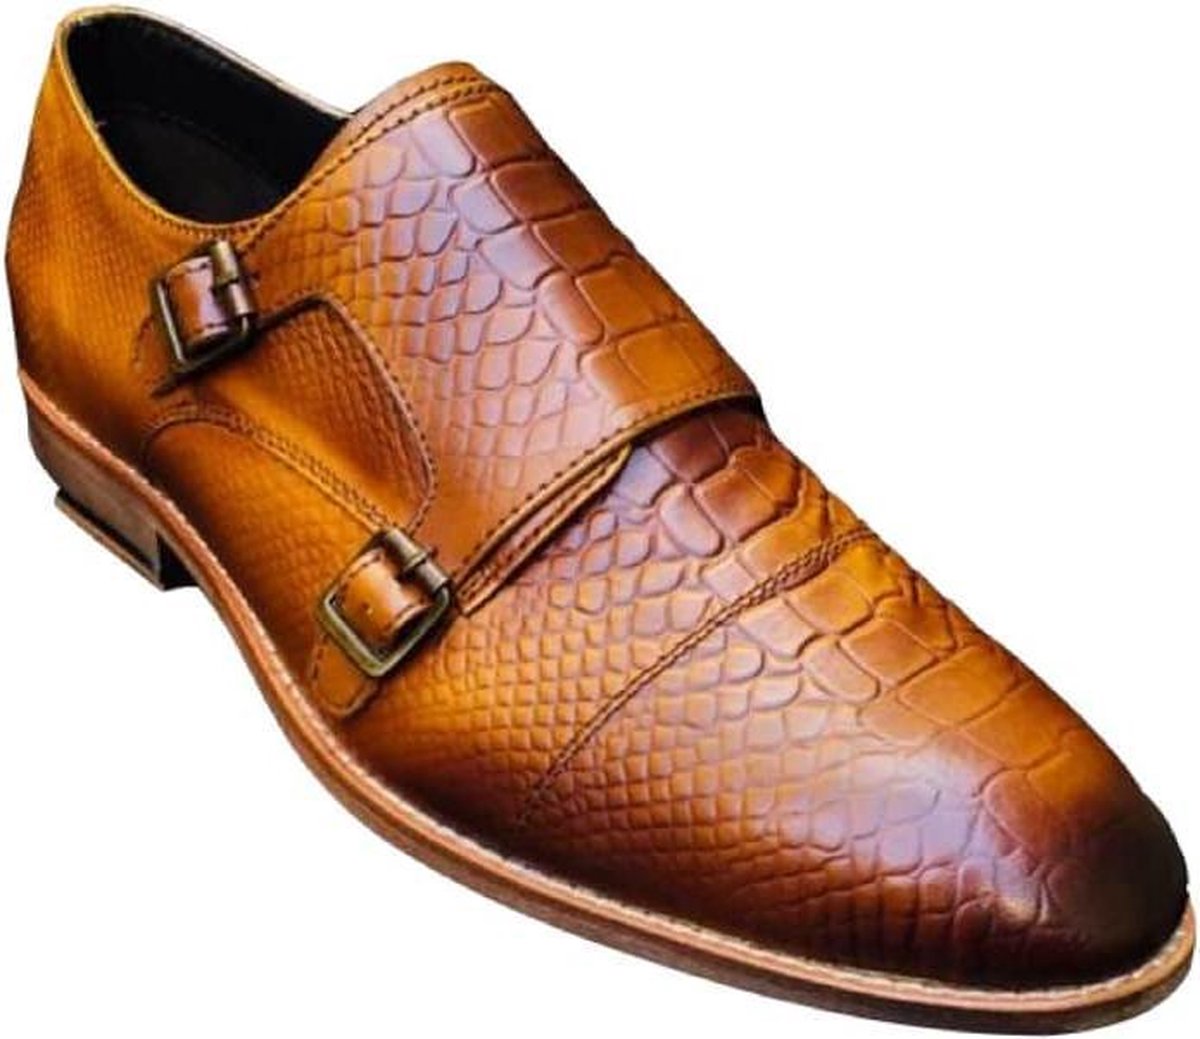 Pantera Pelle Leather Shoes Volledig Lederen Herenschoen Cognac